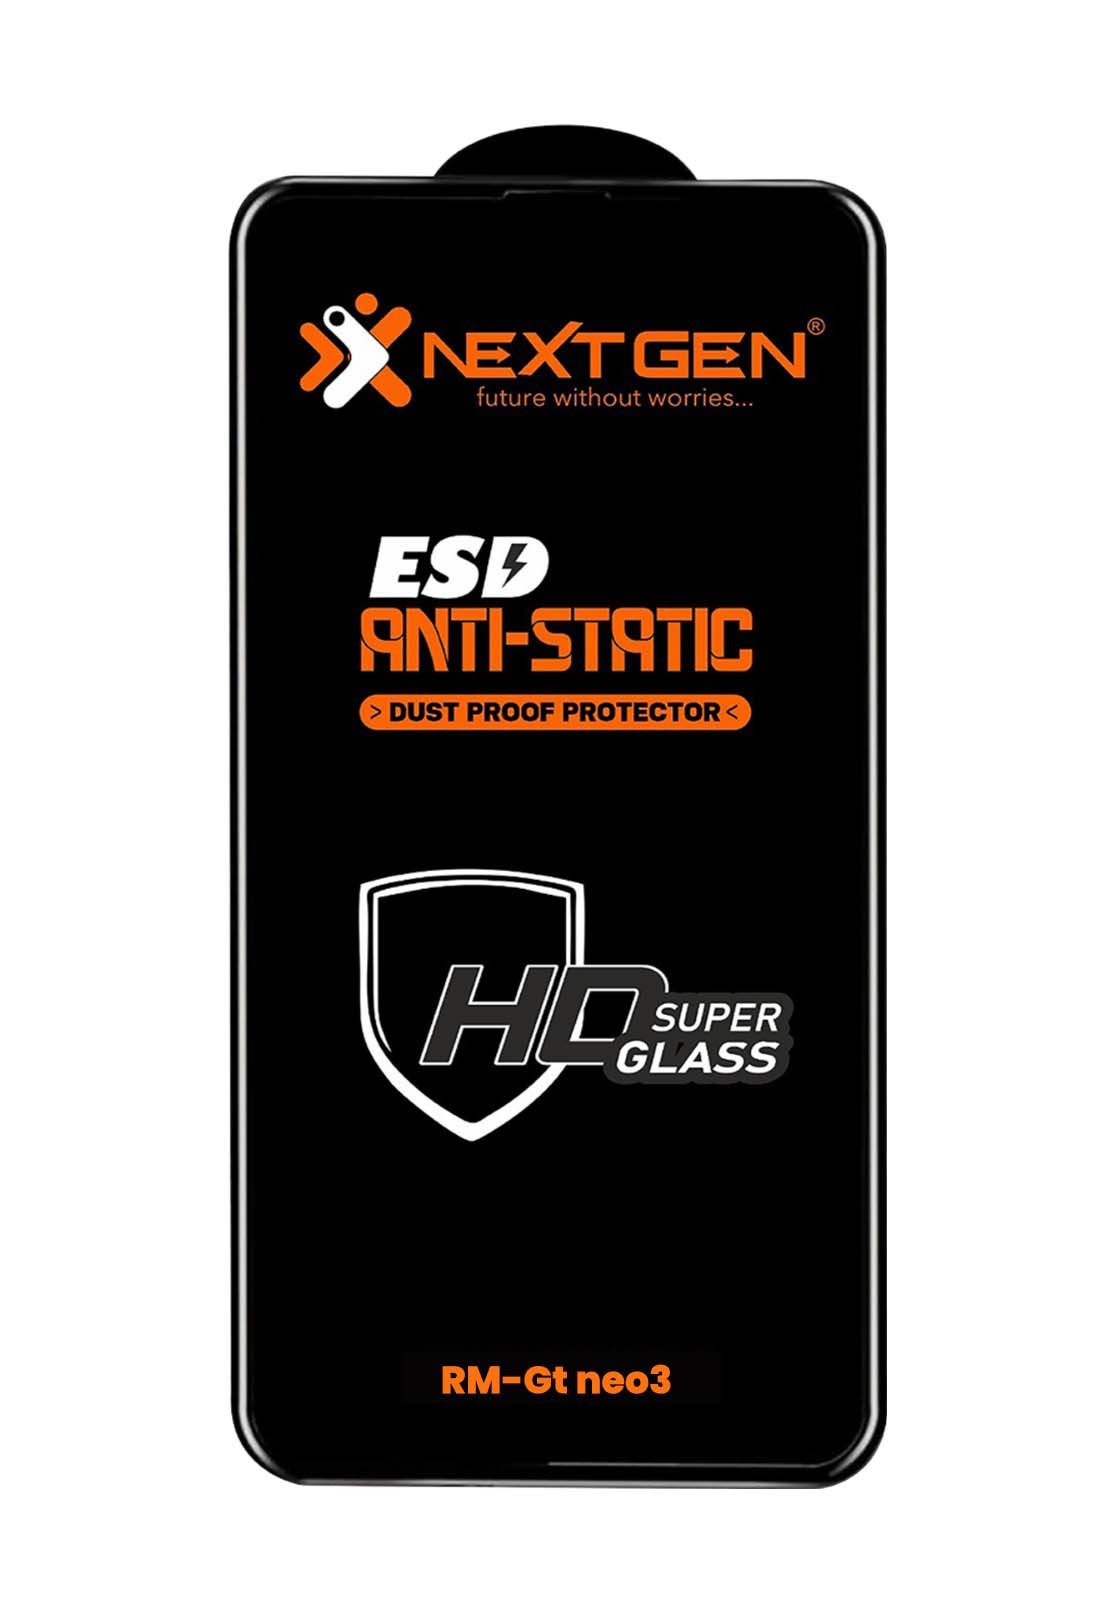 Gt neo3 Realme ESD Anti-Static HD Super Glass